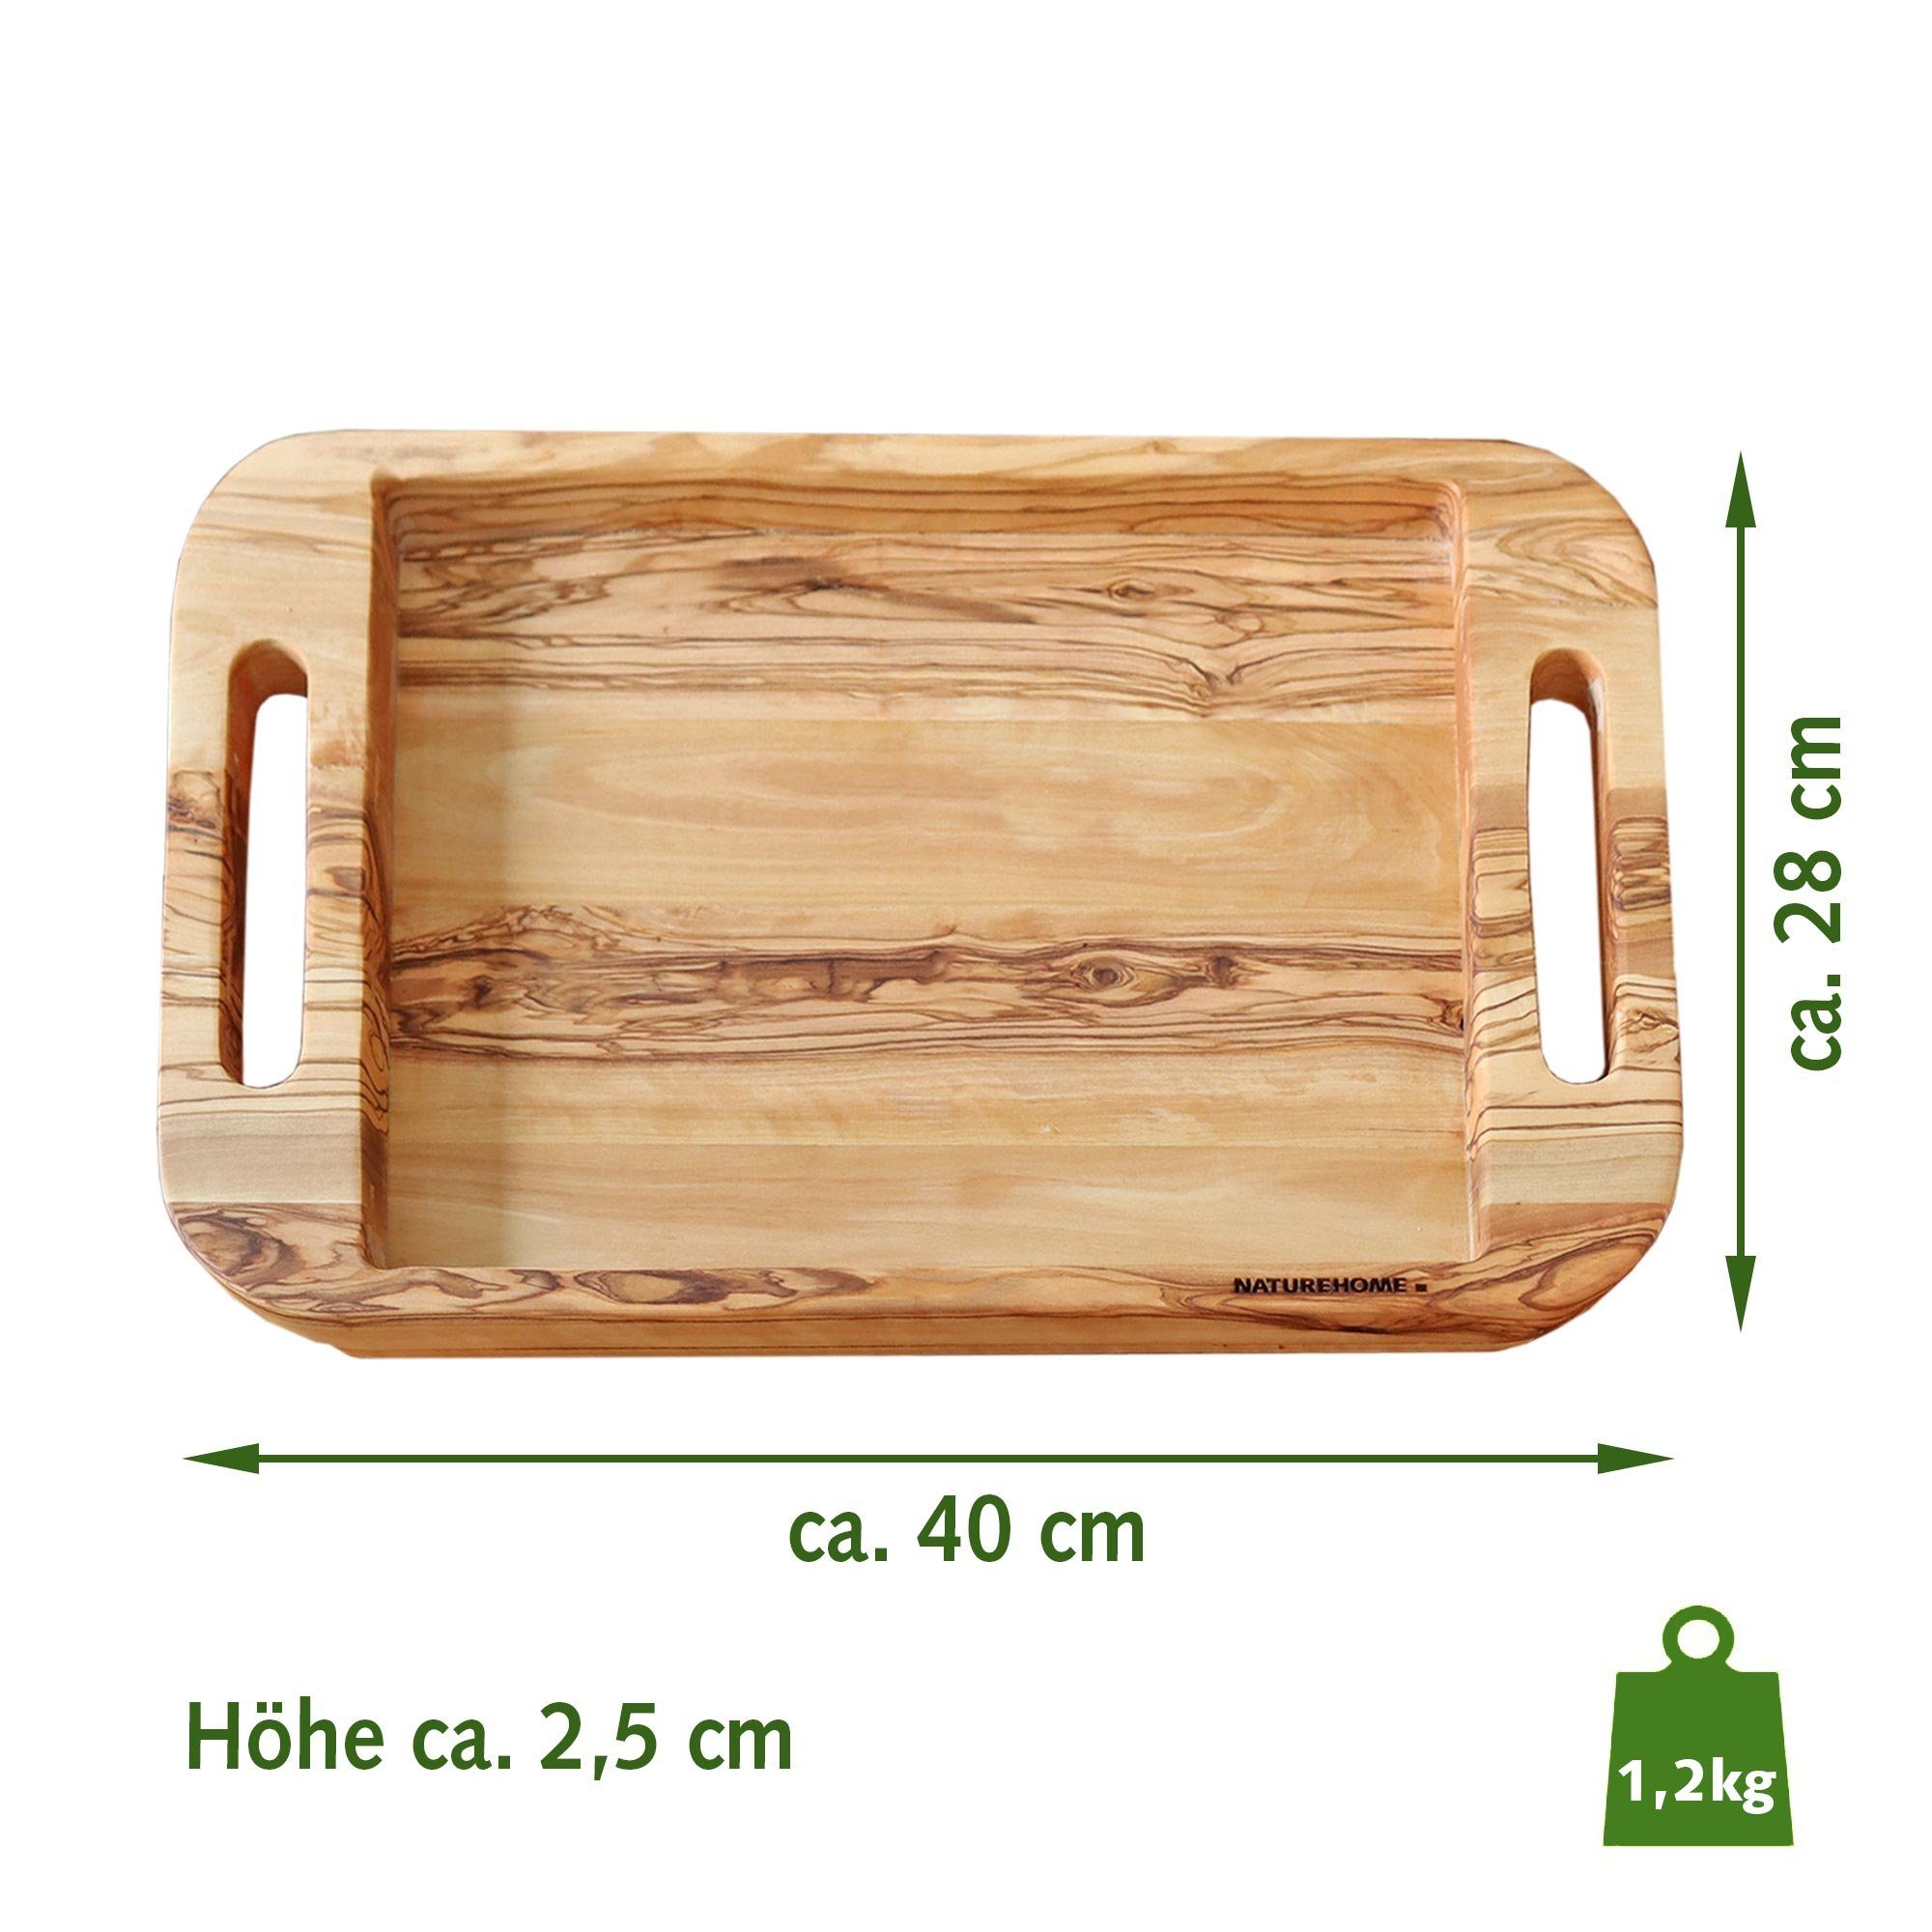 NATUREHOME Tablett Holztablett mit Griff Olivenholz, / Nachhaltig Massivholz, cm), 50x35 NH-F, Handarbeit, (40x28cm